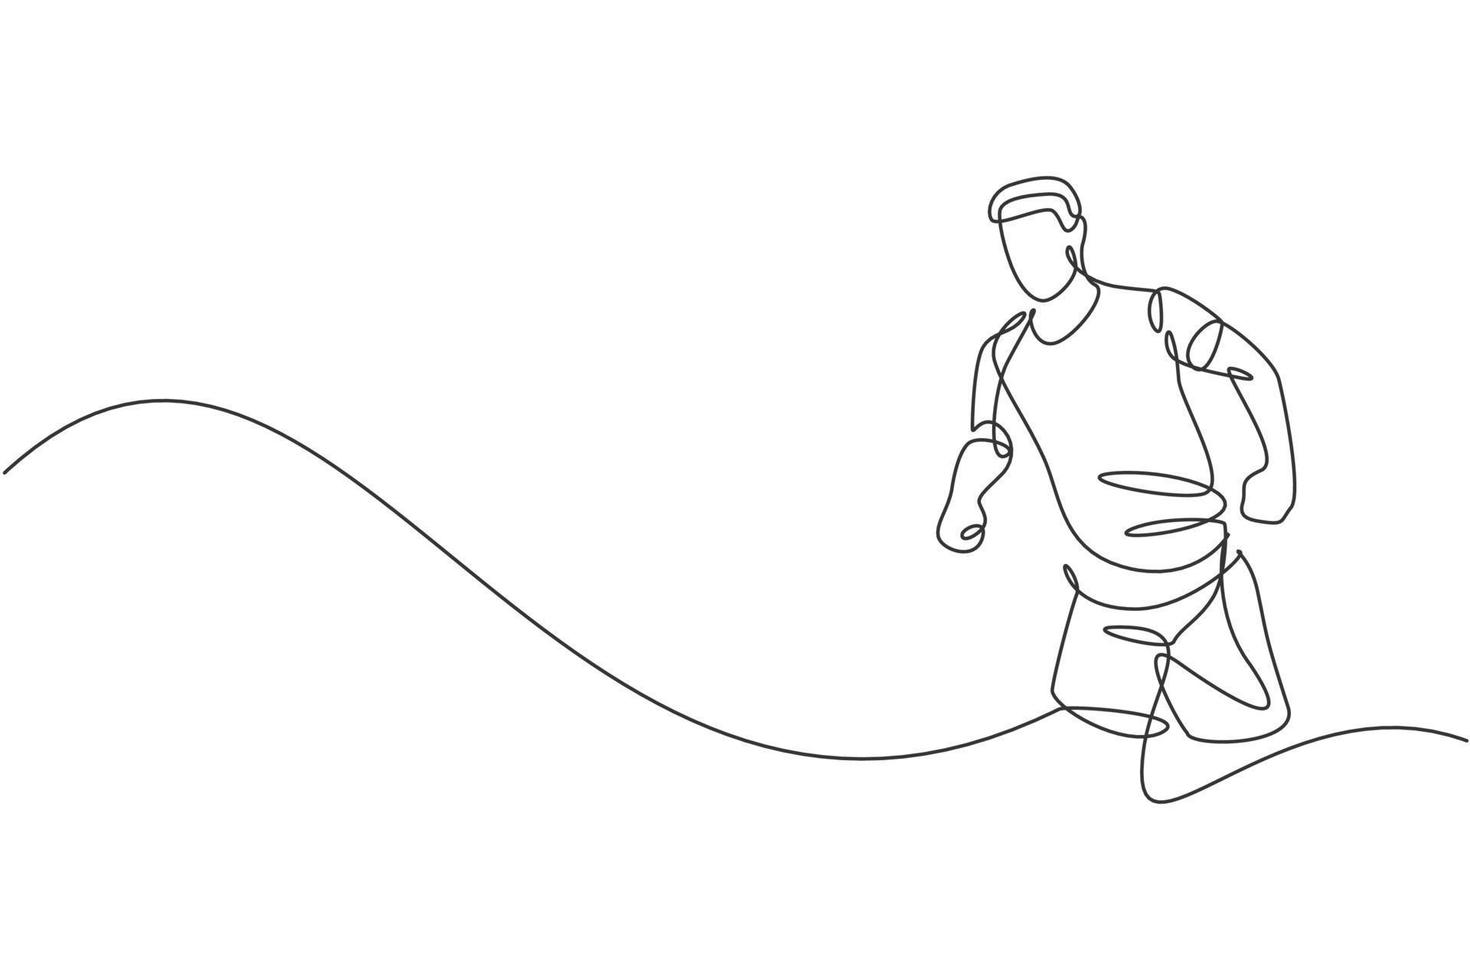 un seul dessin au trait de l'exercice de l'homme jeune coureur heureux pour améliorer l'illustration vectorielle graphique de l'endurance. mode de vie sain et concept de sport de compétition. conception moderne de dessin en ligne continue vecteur